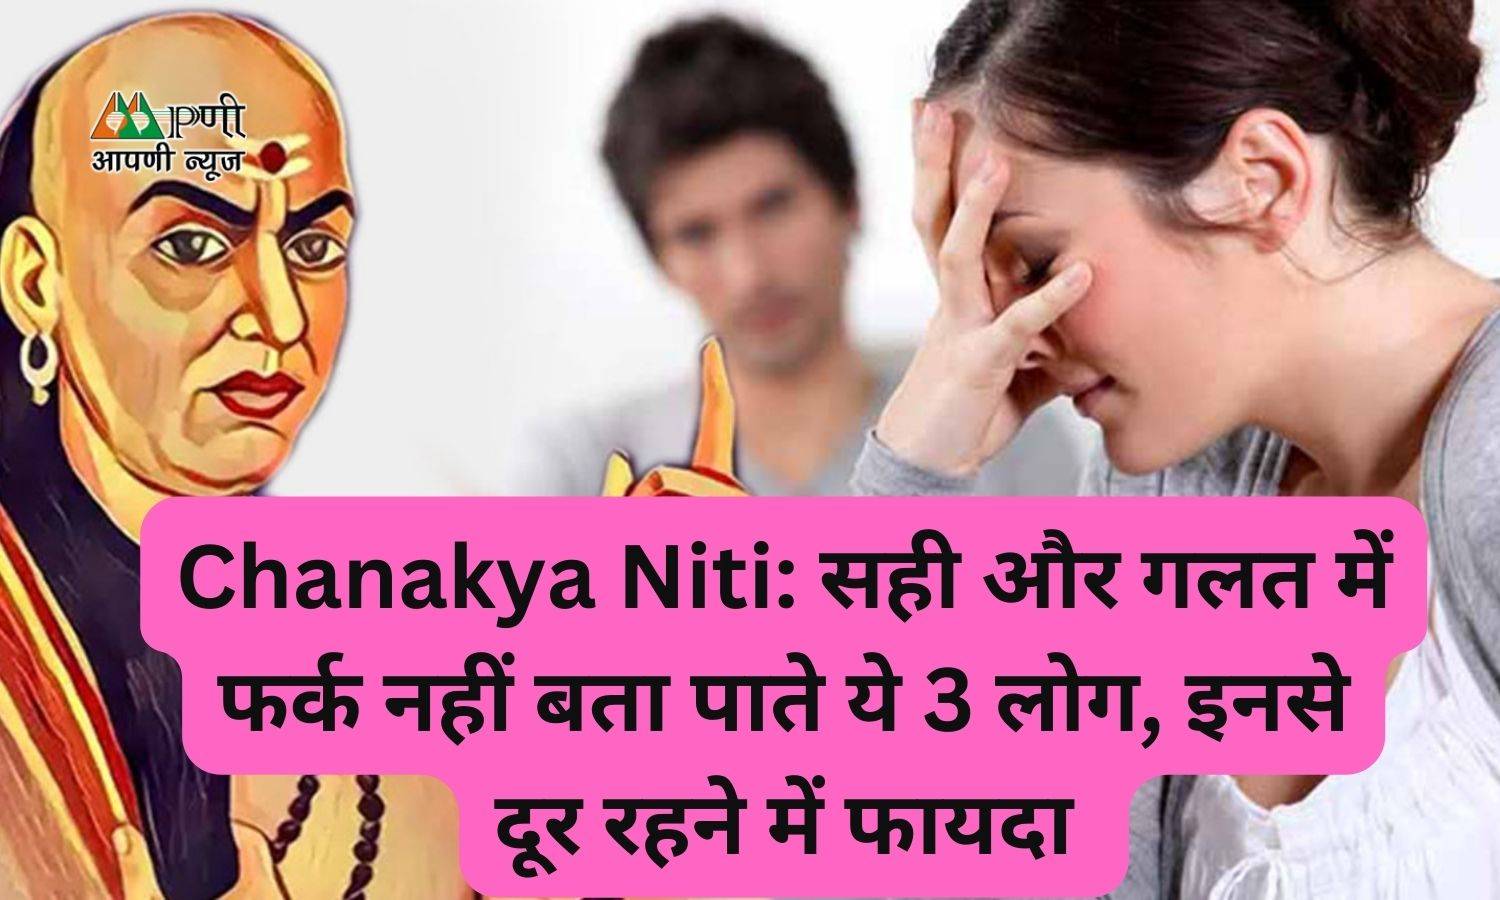 Chanakya Niti: सही और गलत में फर्क नहीं बता पाते ये 3 लोग, इनसे दूर रहने में फायदा